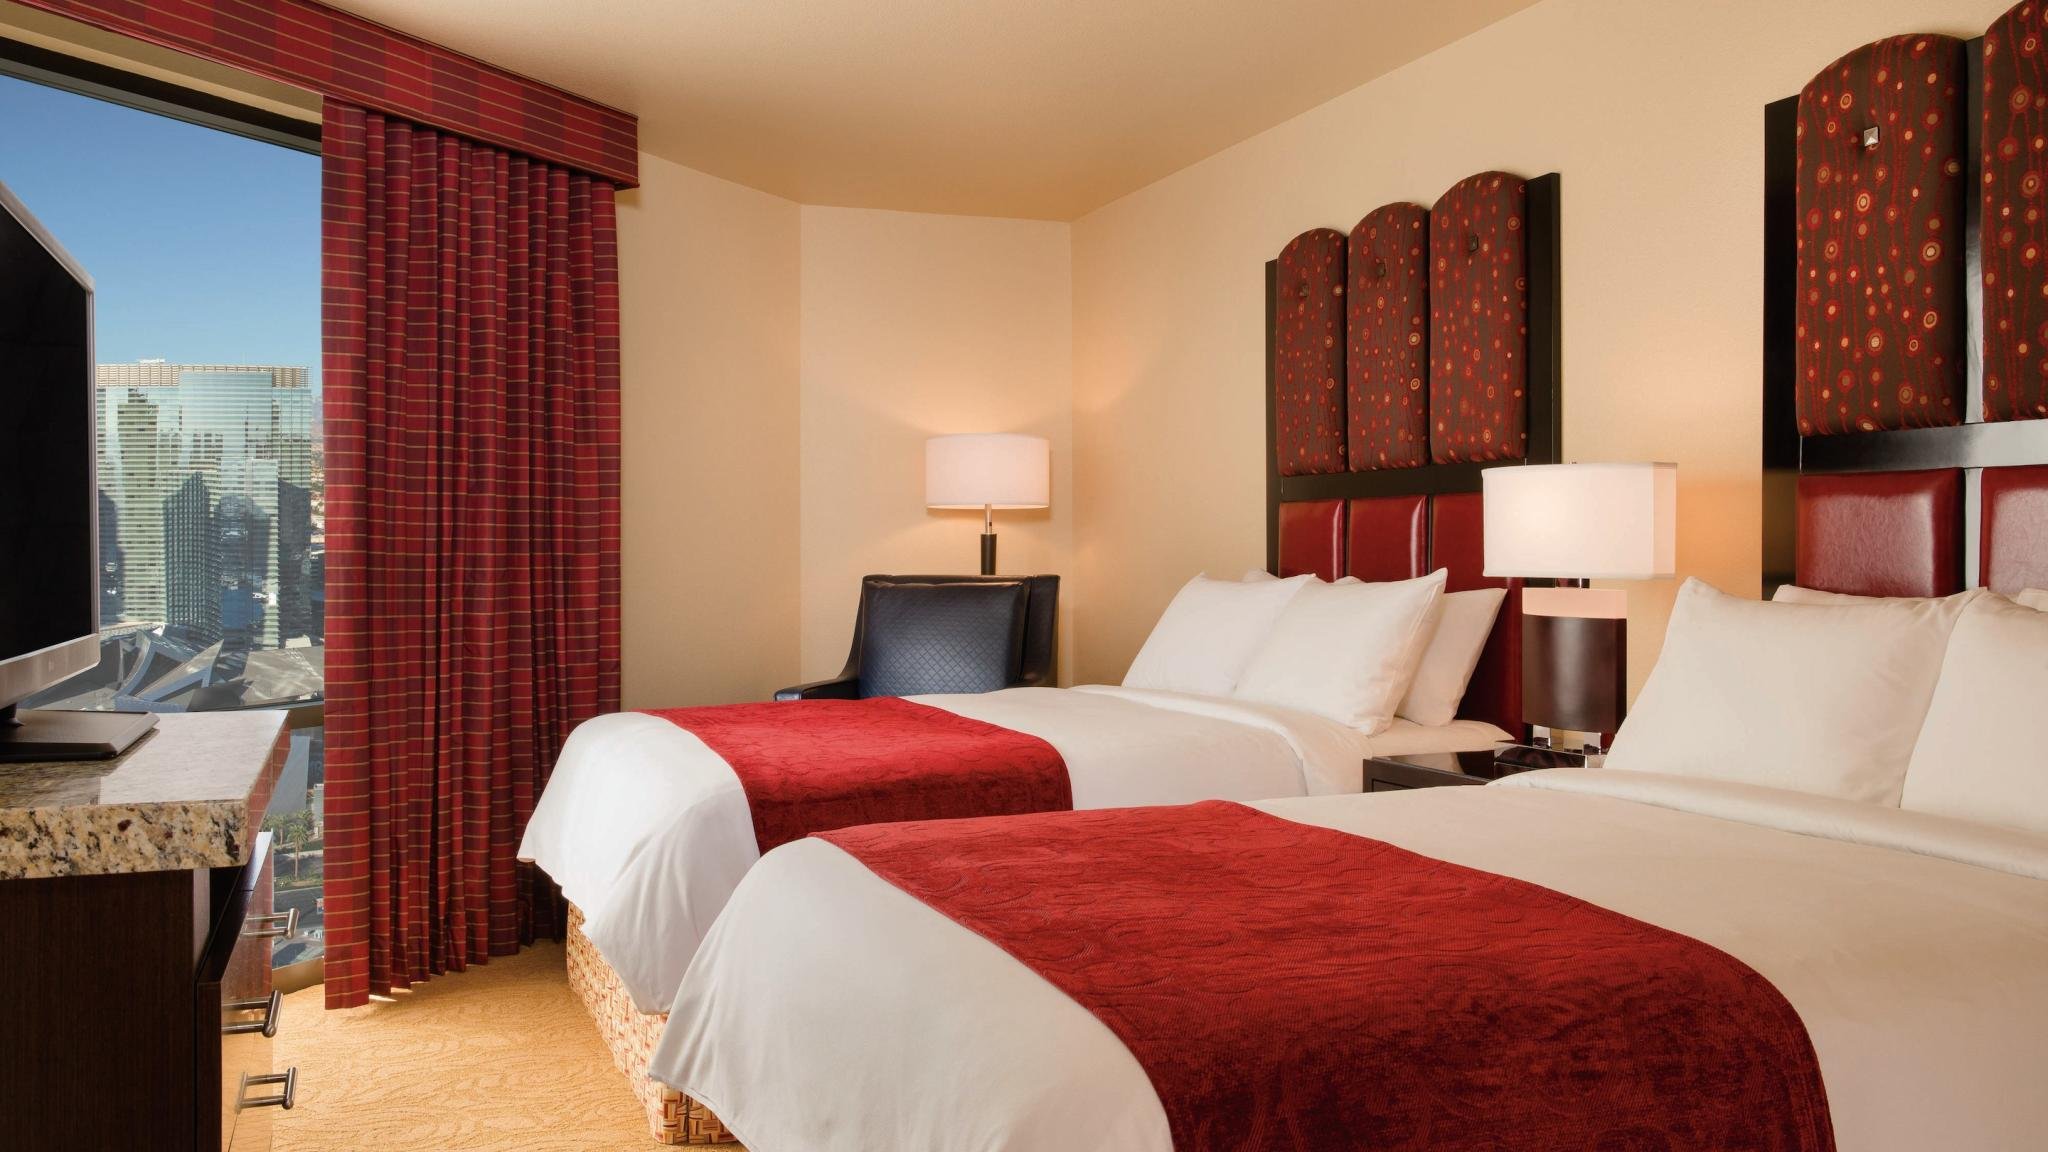 Marriott Grand Chateau Las Vegas 3 bedroom 